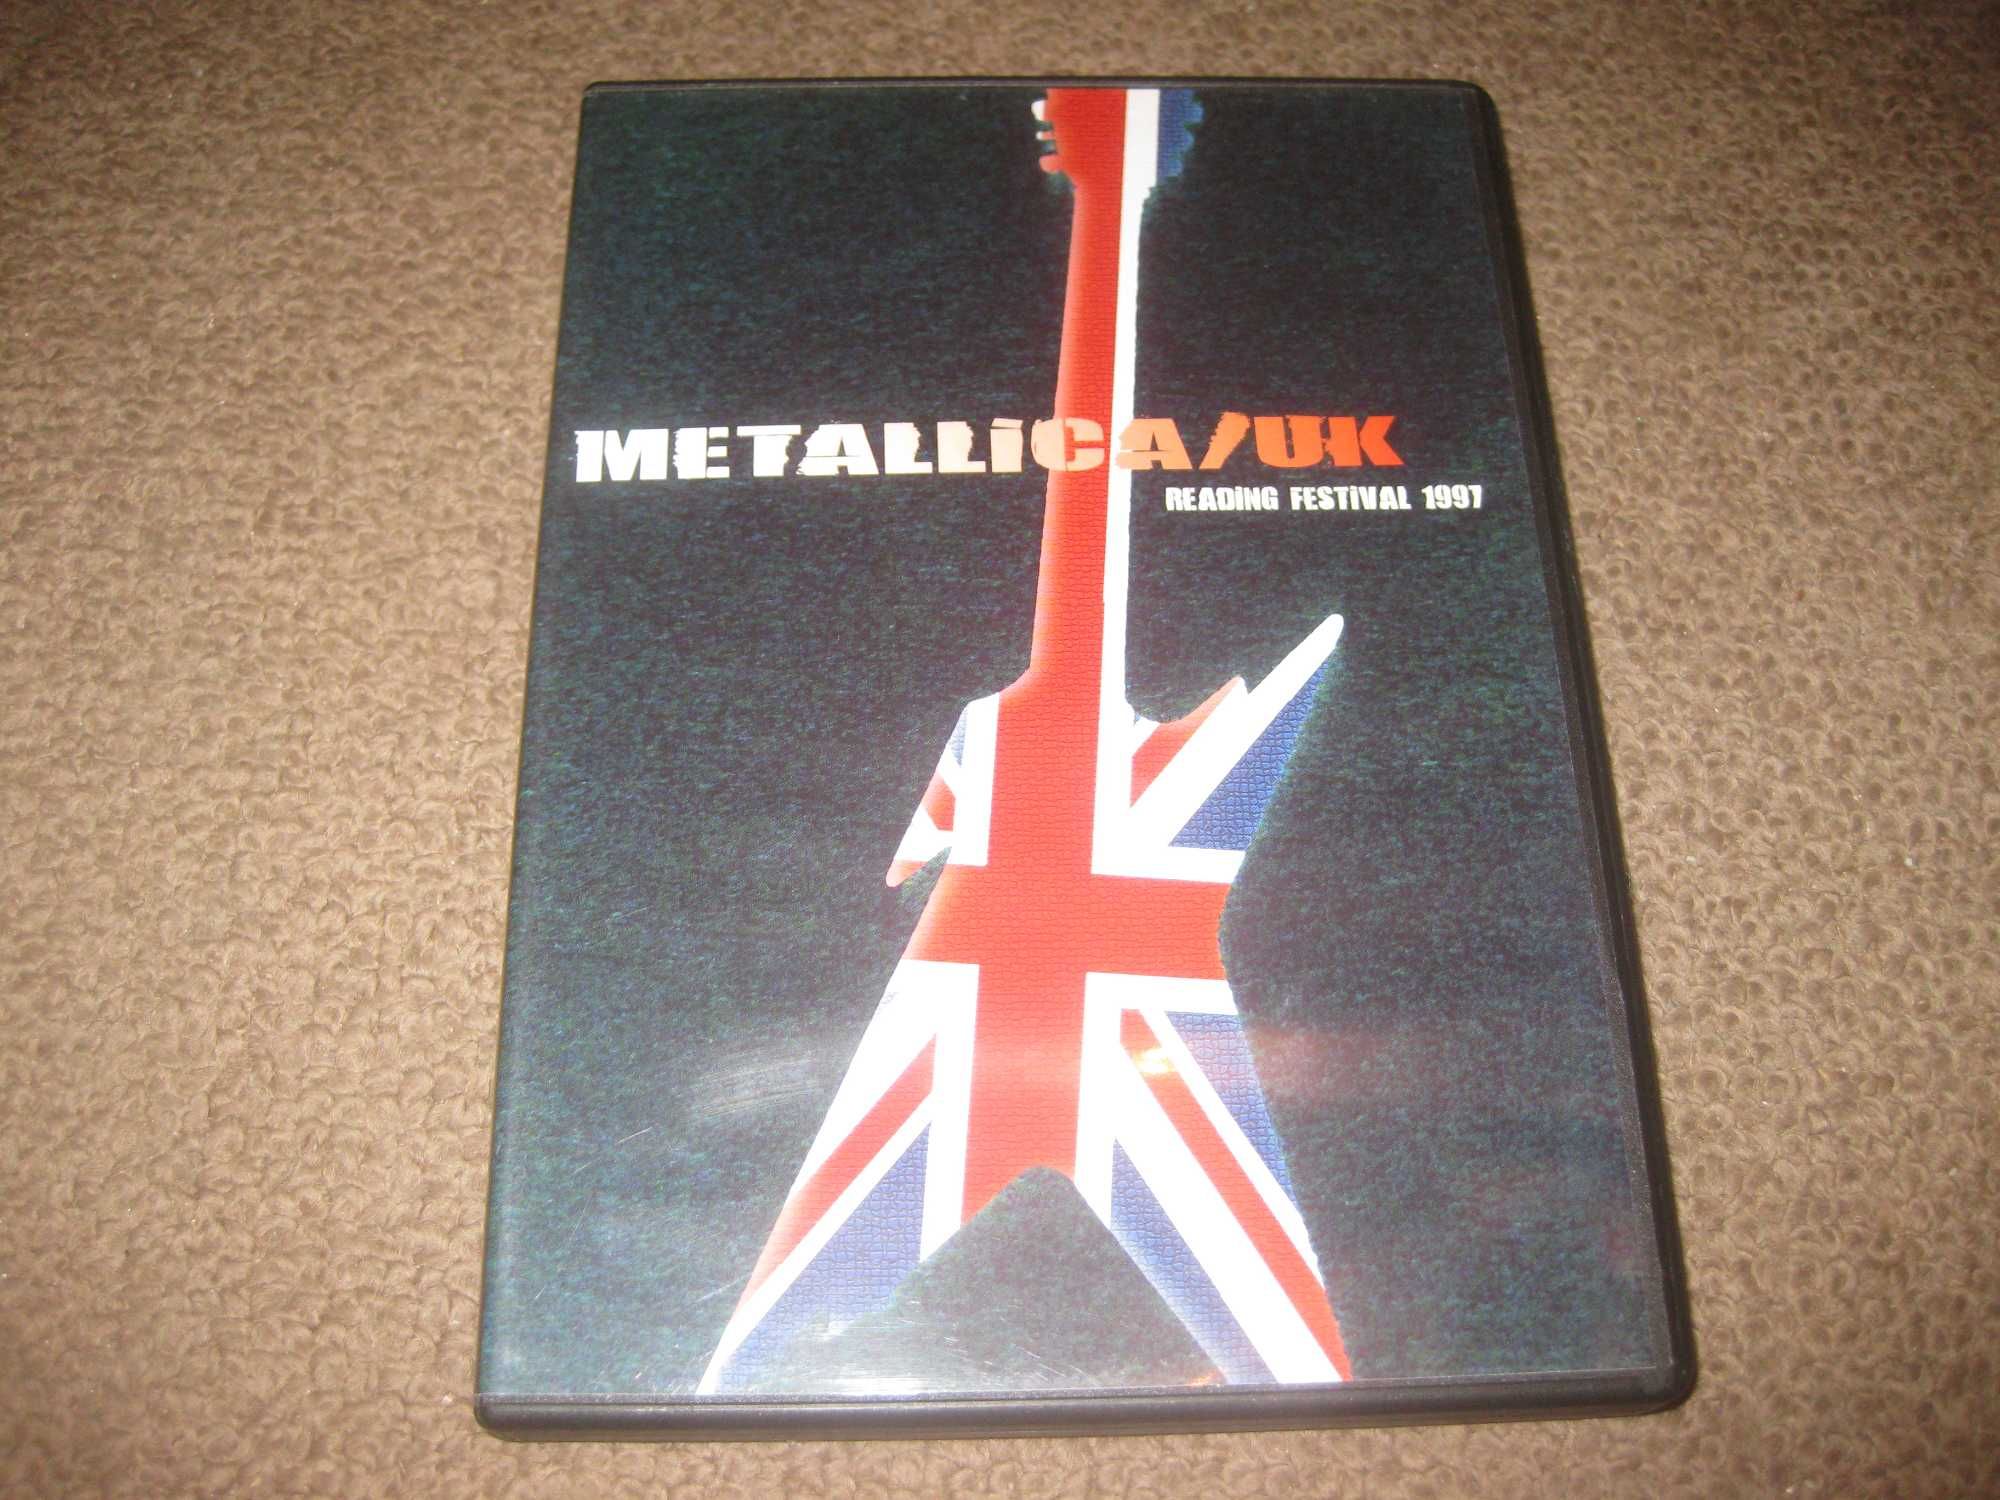 DVD dos Metallica "UK Reading Festival 1997" Raríssimo!